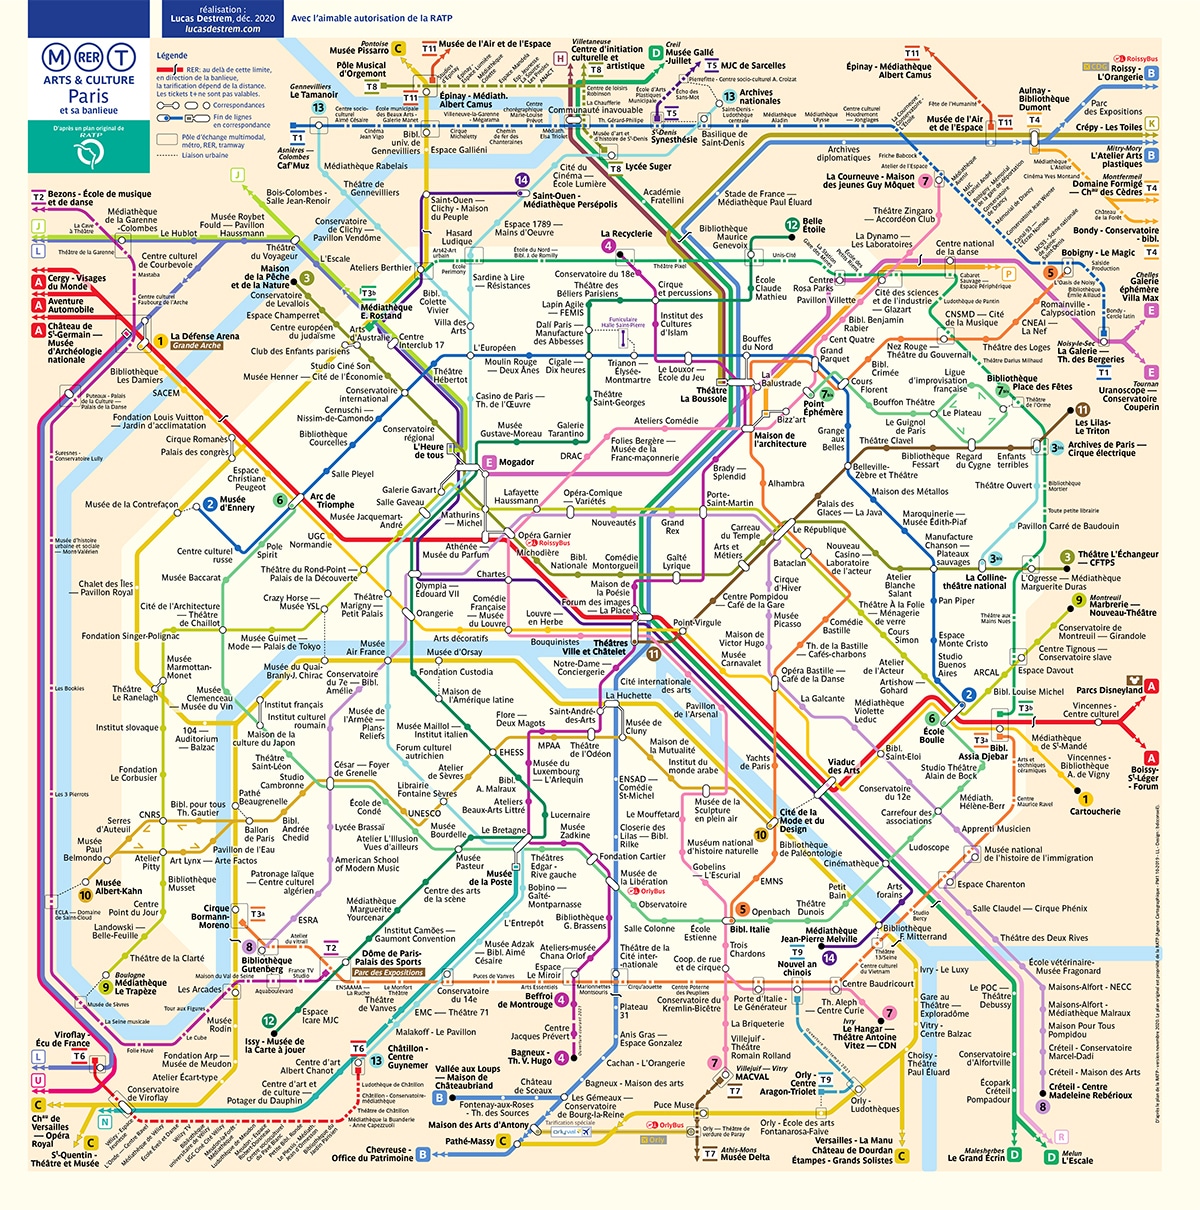 Un nouveau plan du métro de Paris, culturel et artistique - Sceneweb